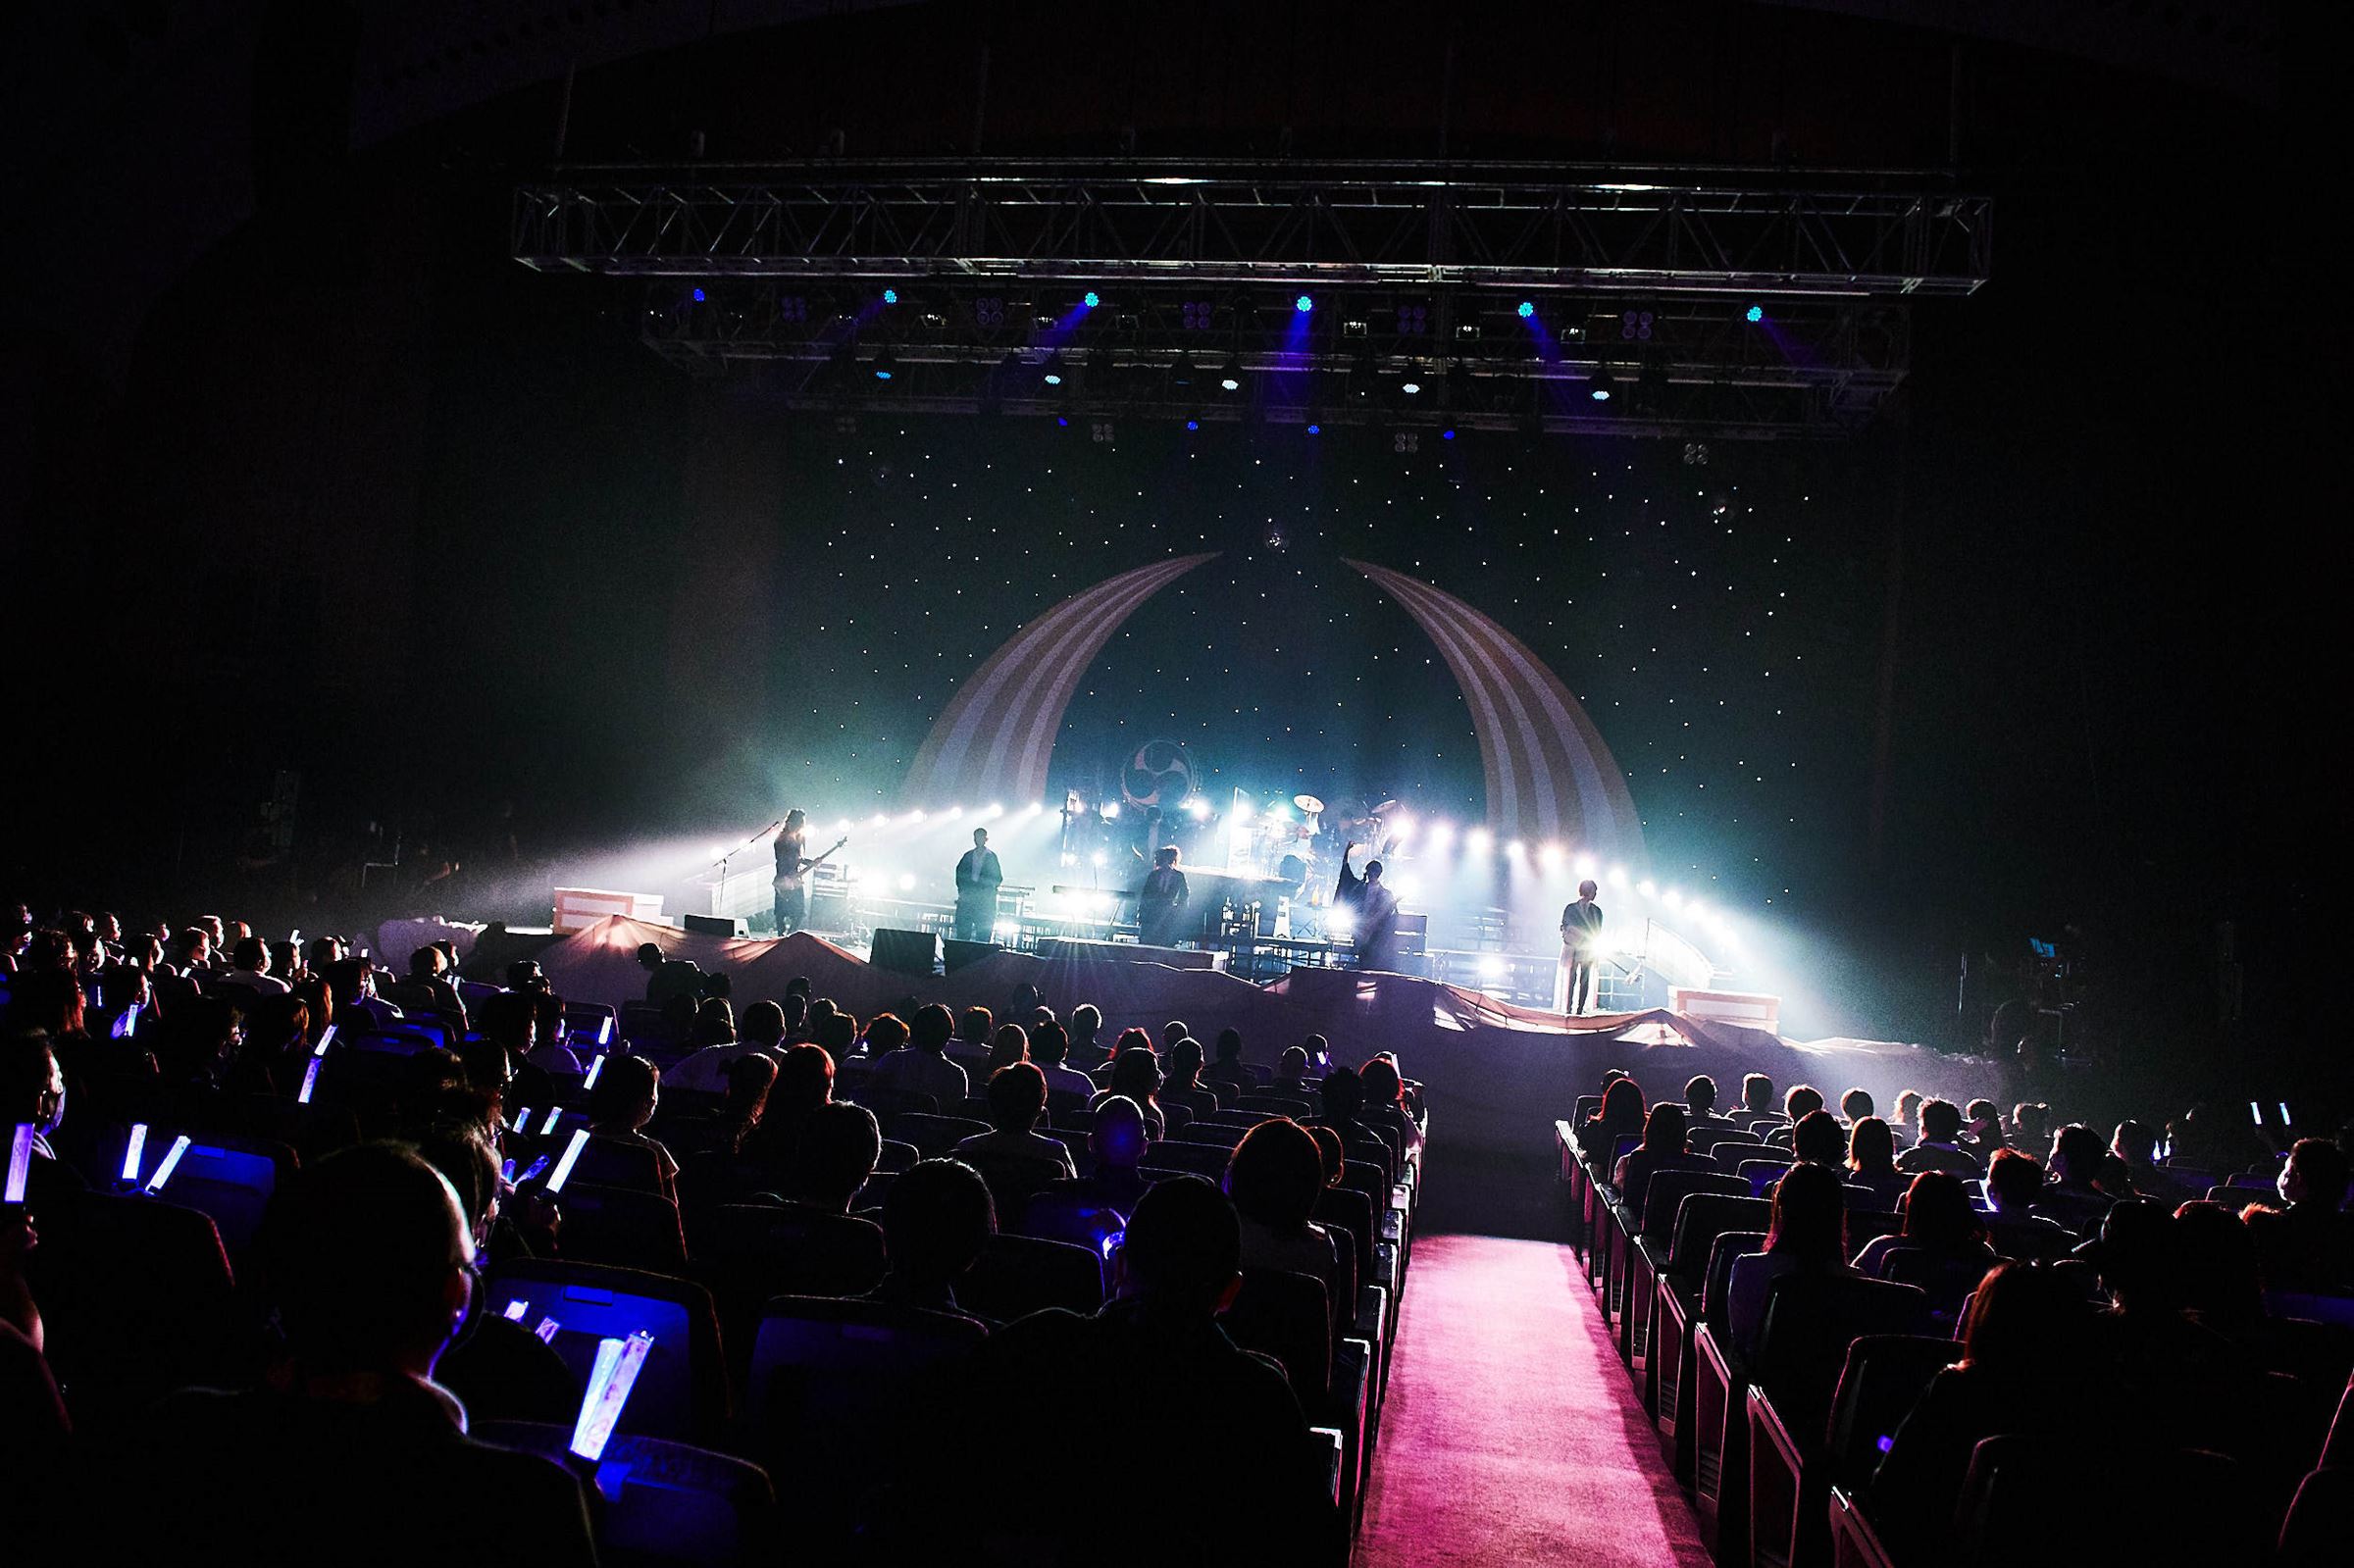 『和楽器バンド 8th Anniversary Japan Tour ∞ - Infinity –』パシフィコ横浜 国立大ホール公演より